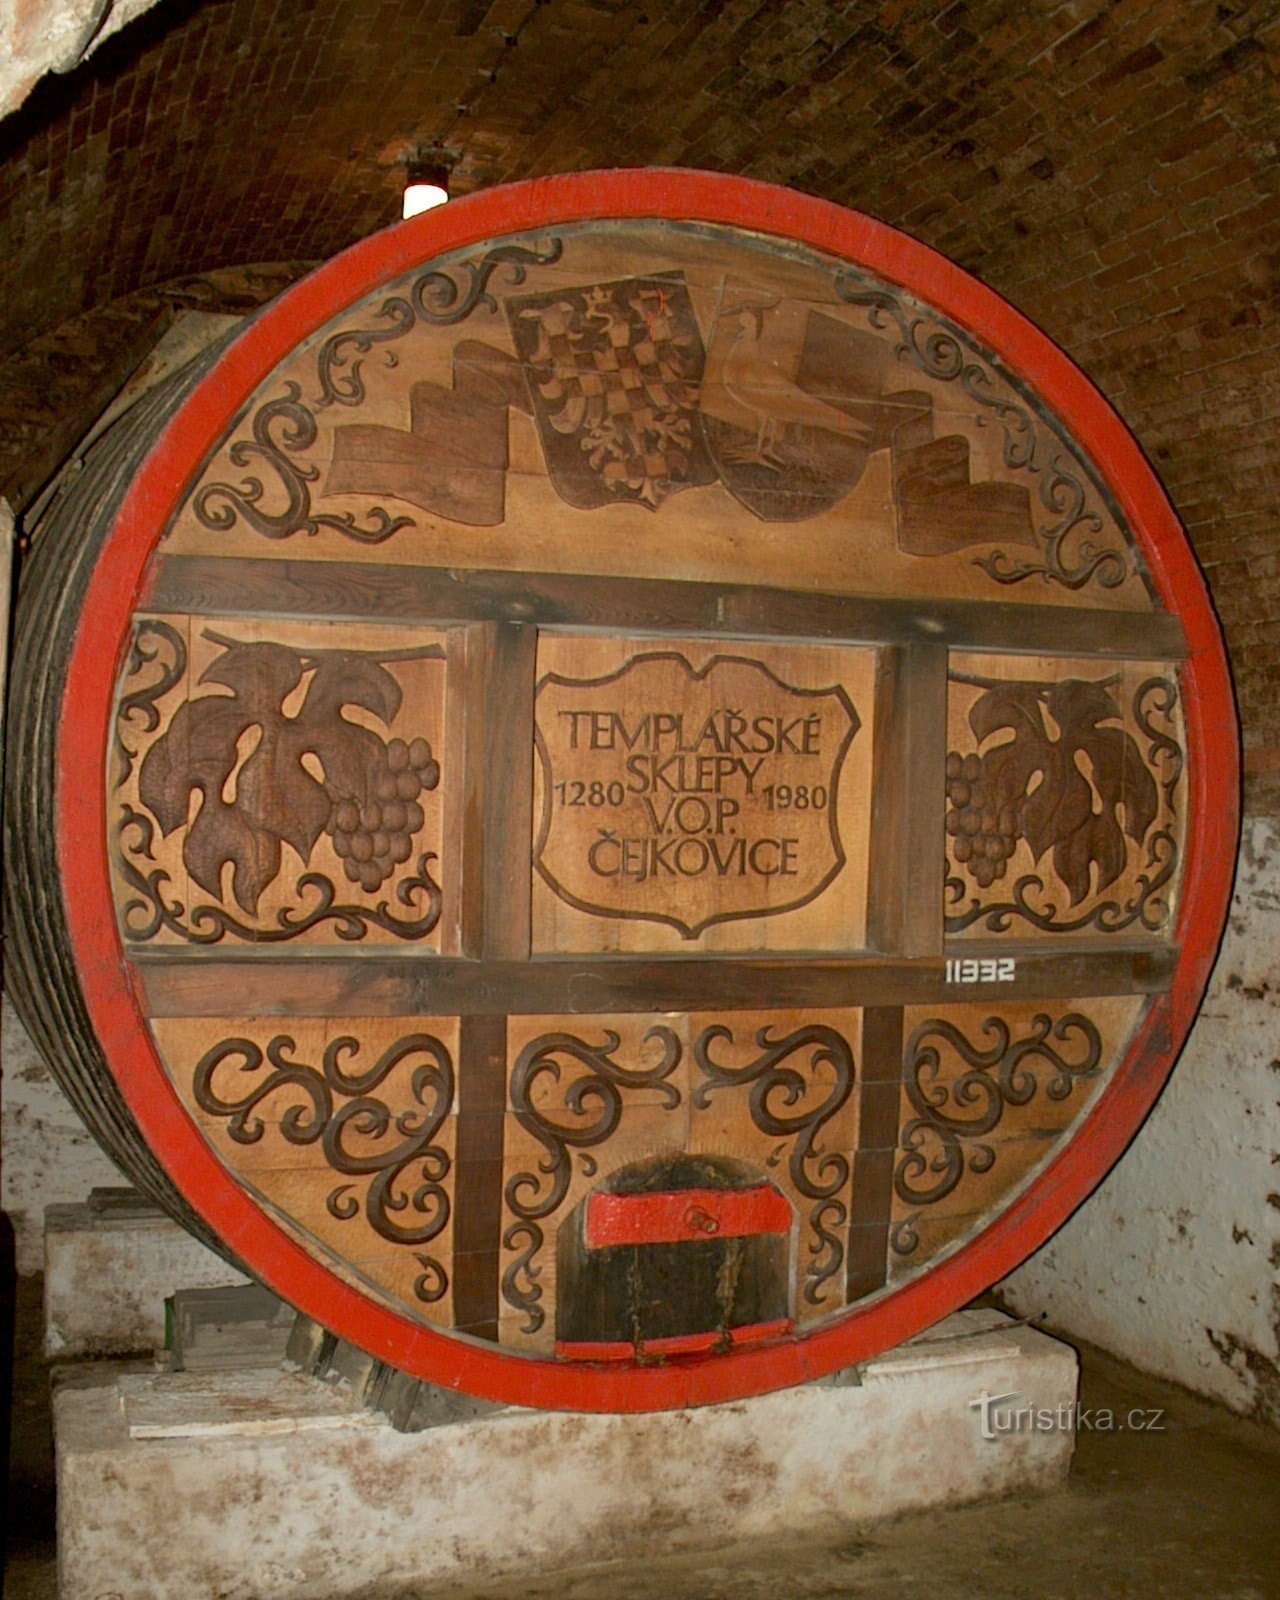 大きな樽、写真 © Čejkovice cellars